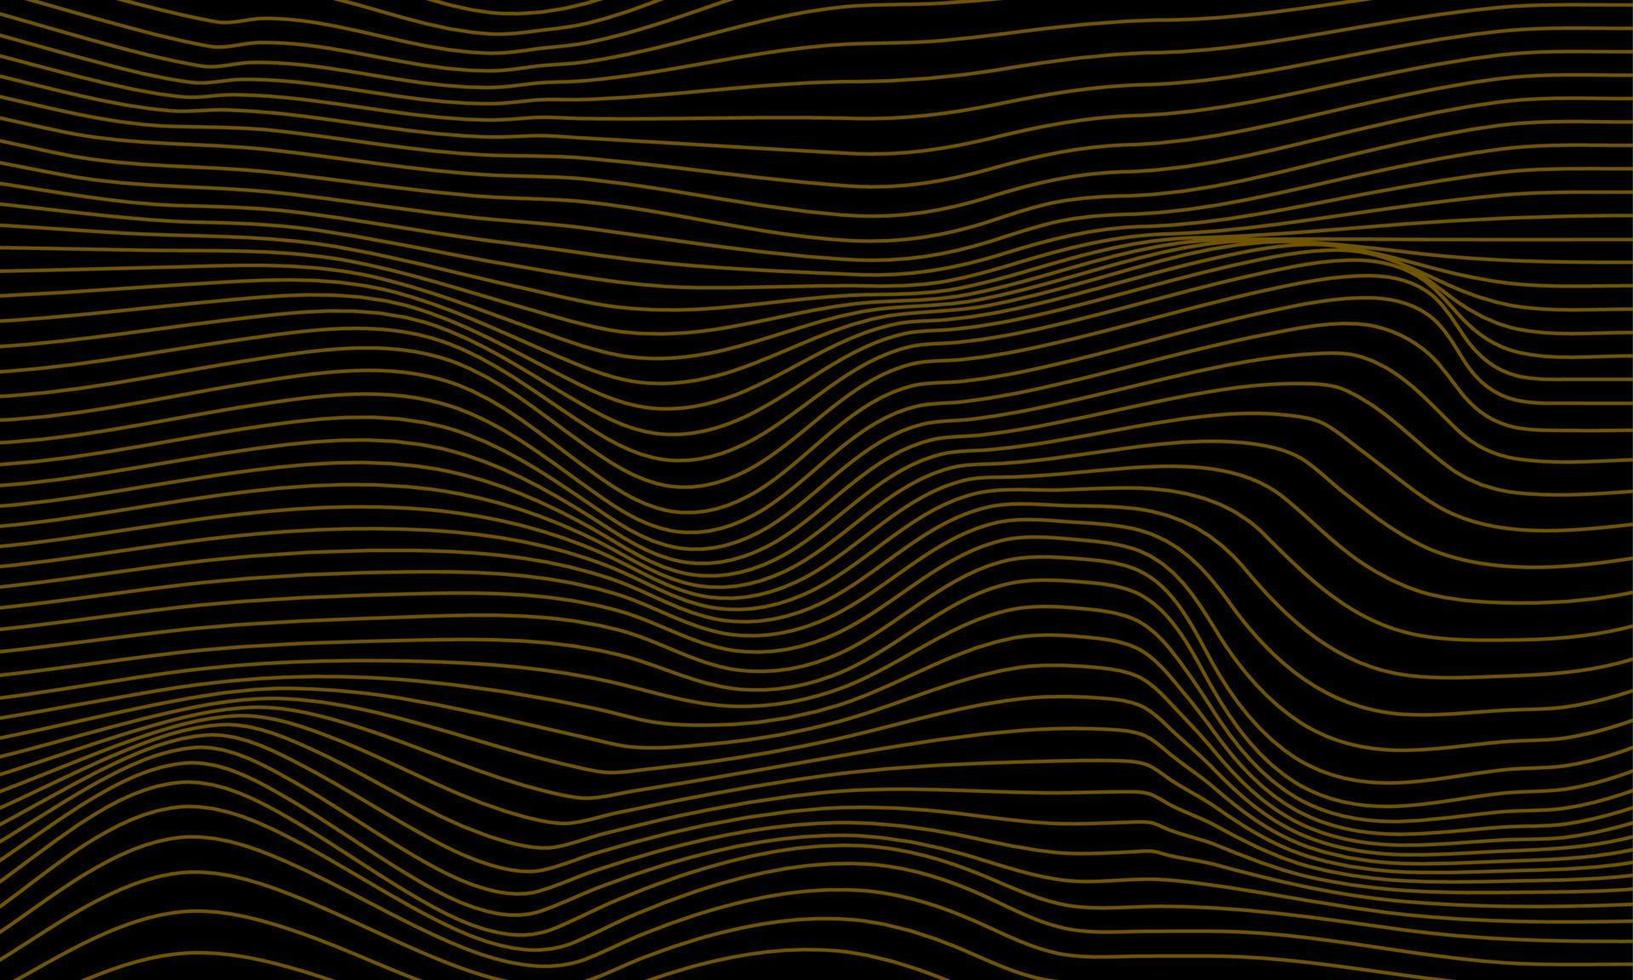 ondas de linha de ouro em fundo preto, design de vetor de fundo abstrato